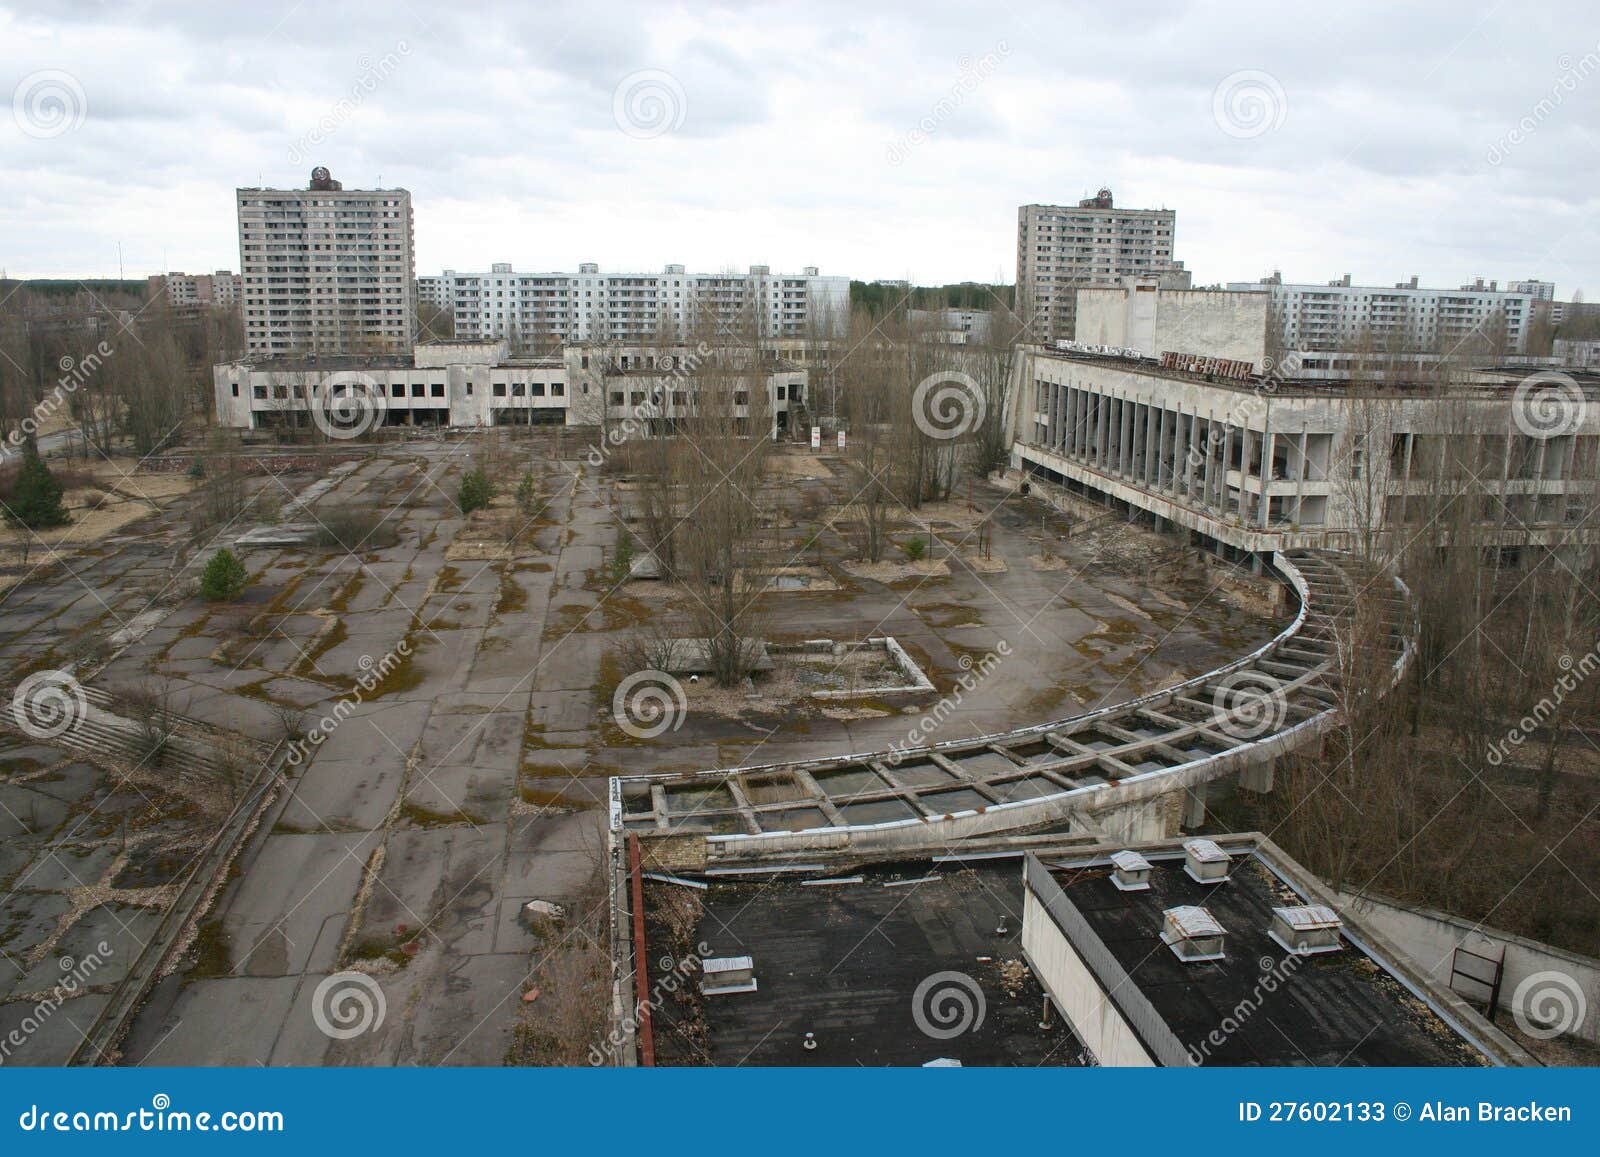 the abandoned city of pripyat, chernobyl